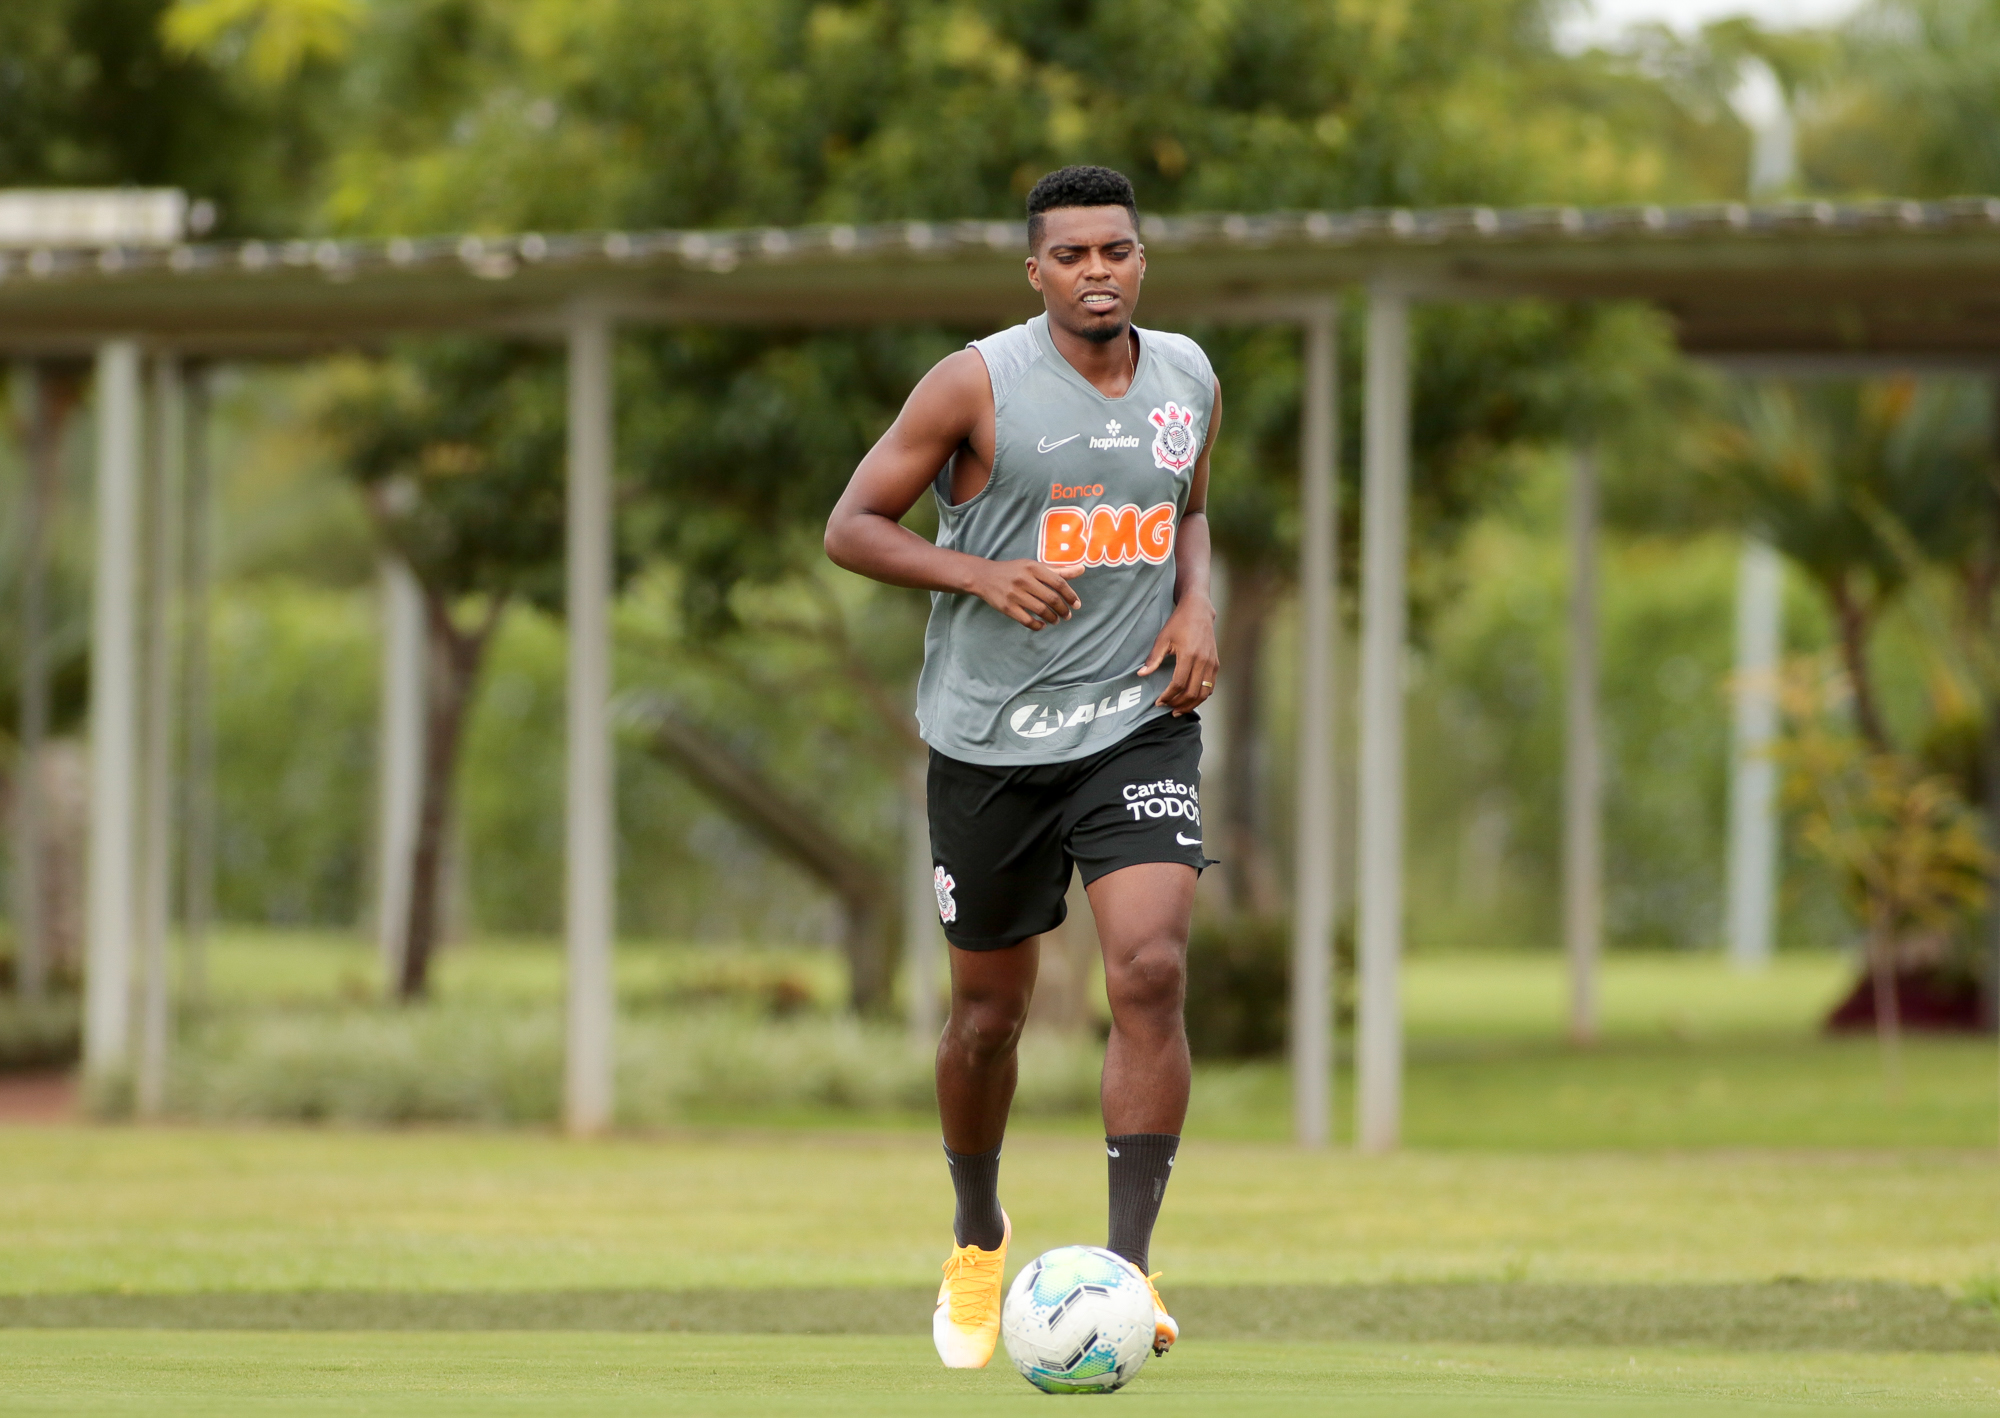 Em clima de despedida no Corinthians, Jemerson mantém conversas com Atlético-MG